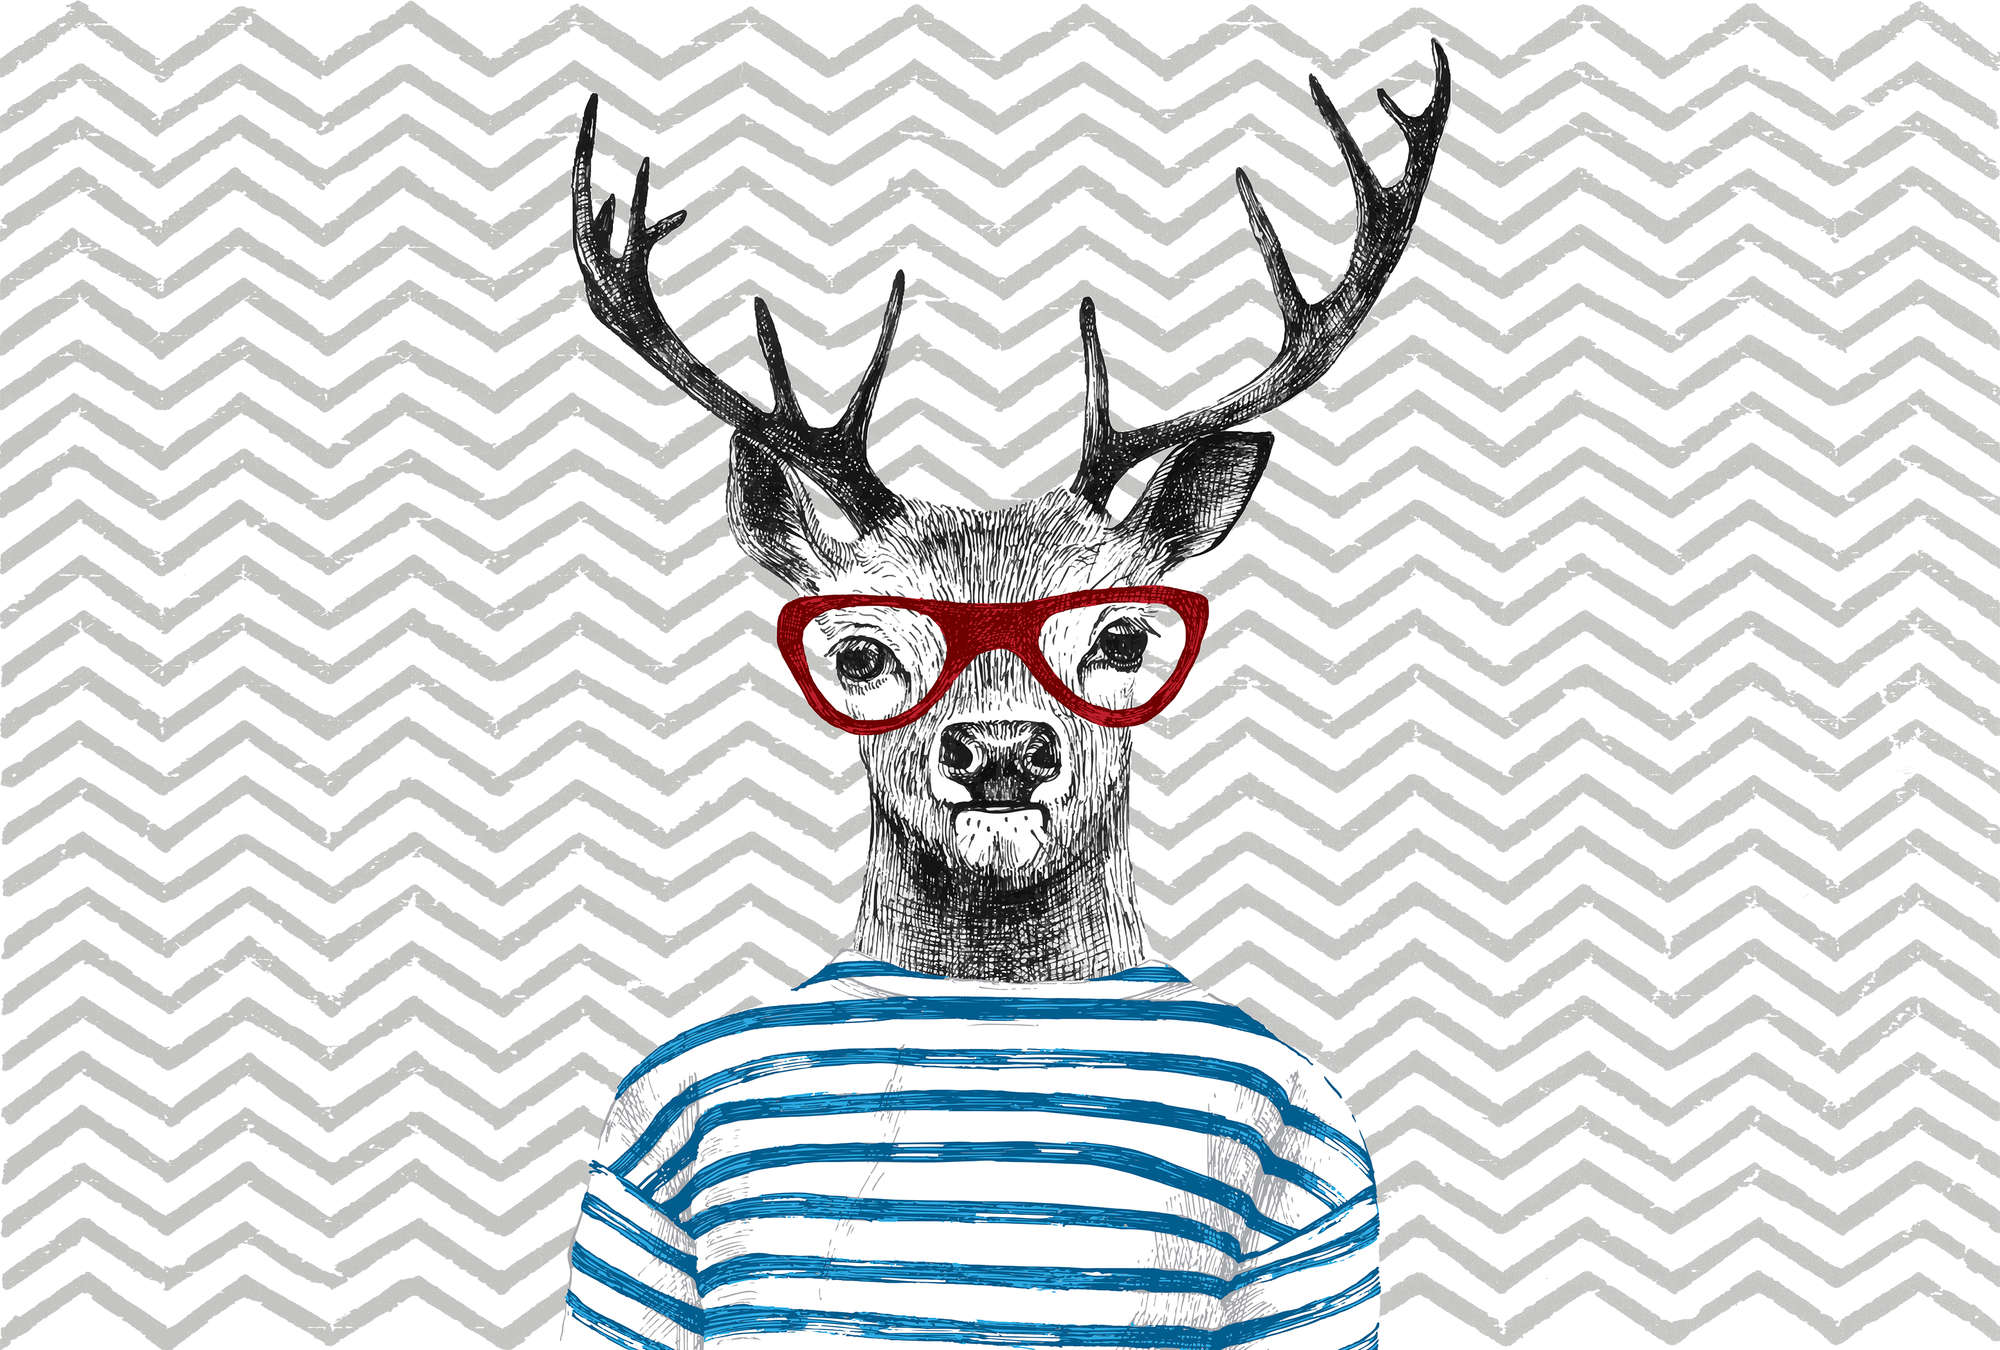             Nursery mural comic design, deer with glasses - blue, grey, red
        